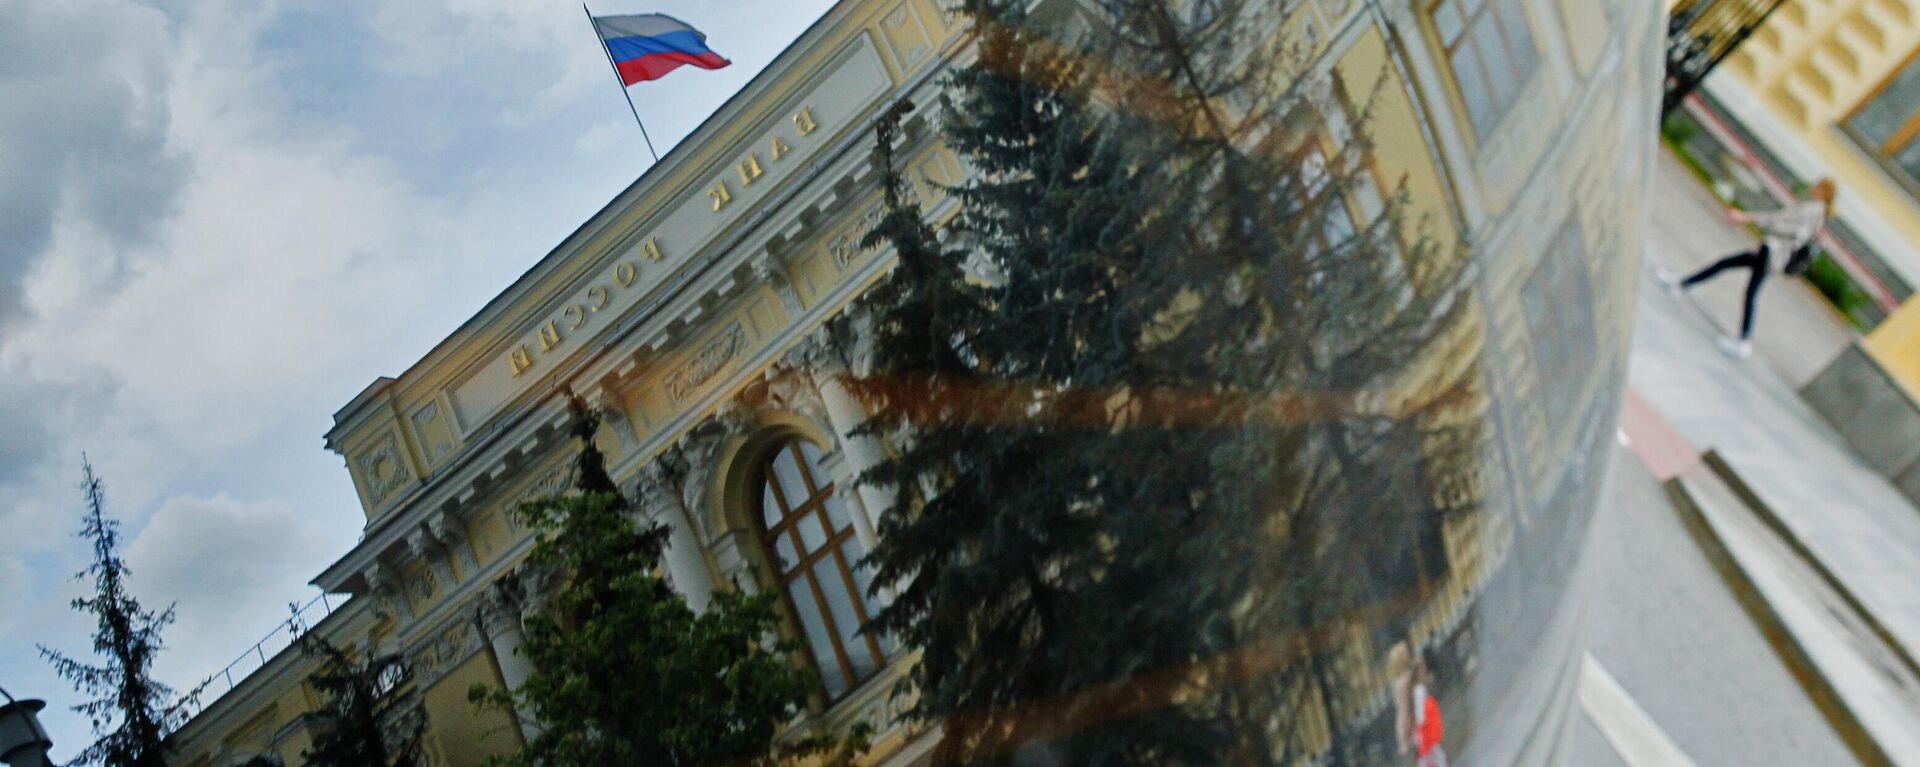 Здание Банка России (Центрального банка РФ) отражается в припаркованной рядом машине - Sputnik Абхазия, 1920, 01.08.2022